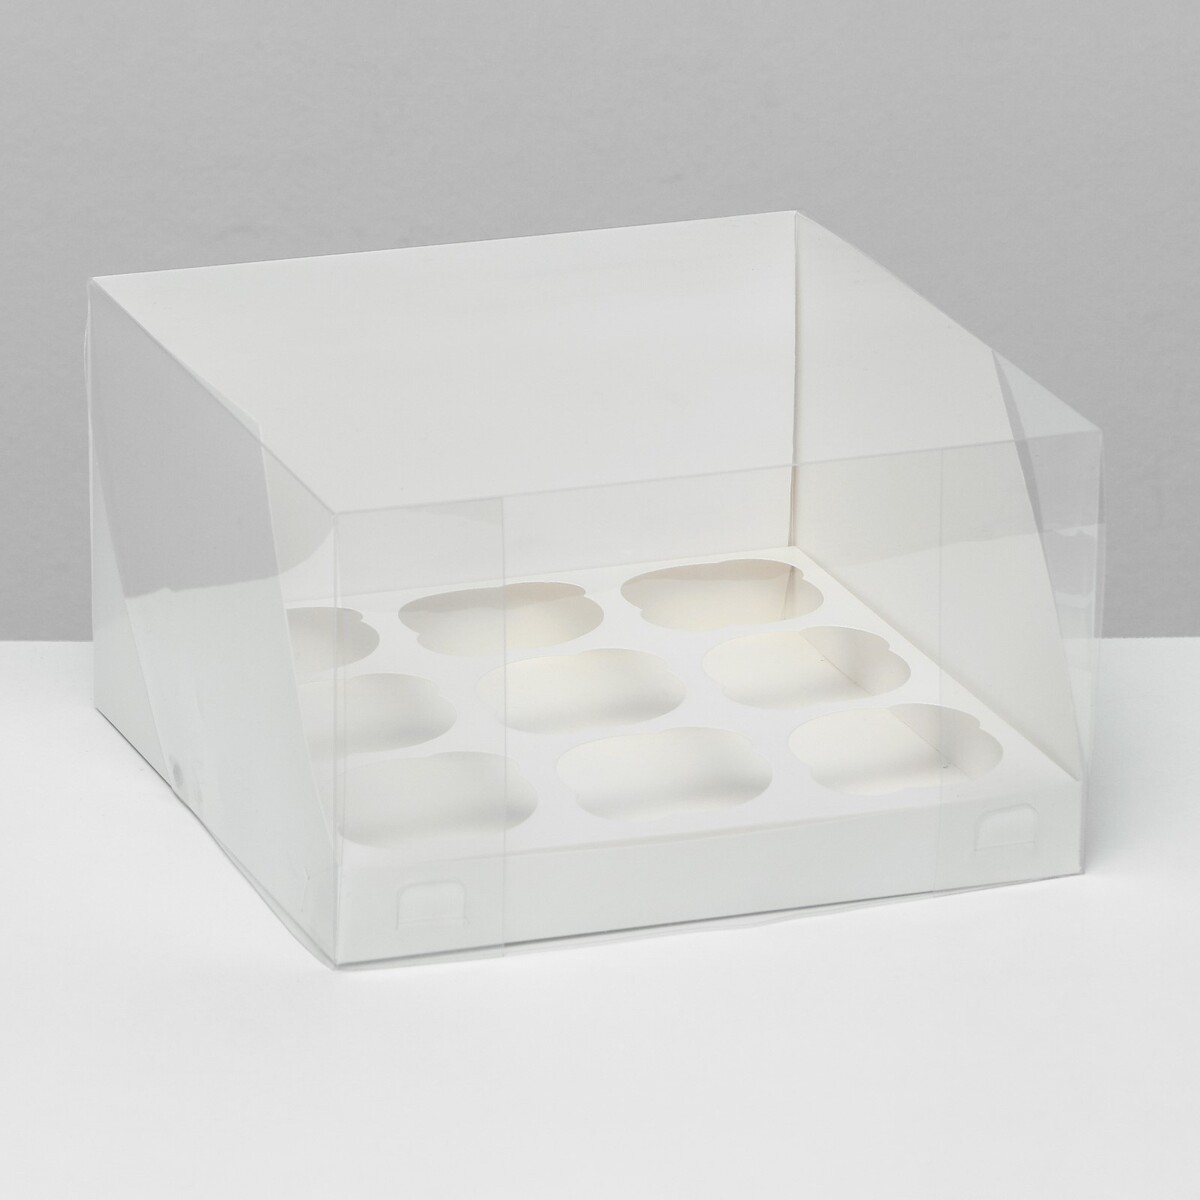 Кондитерская складная коробка для 9 капкейков белая 23,5 x 23 x 14 см кондитерская складная коробка для 4 капкейков 16 х 16 х 10 серебро